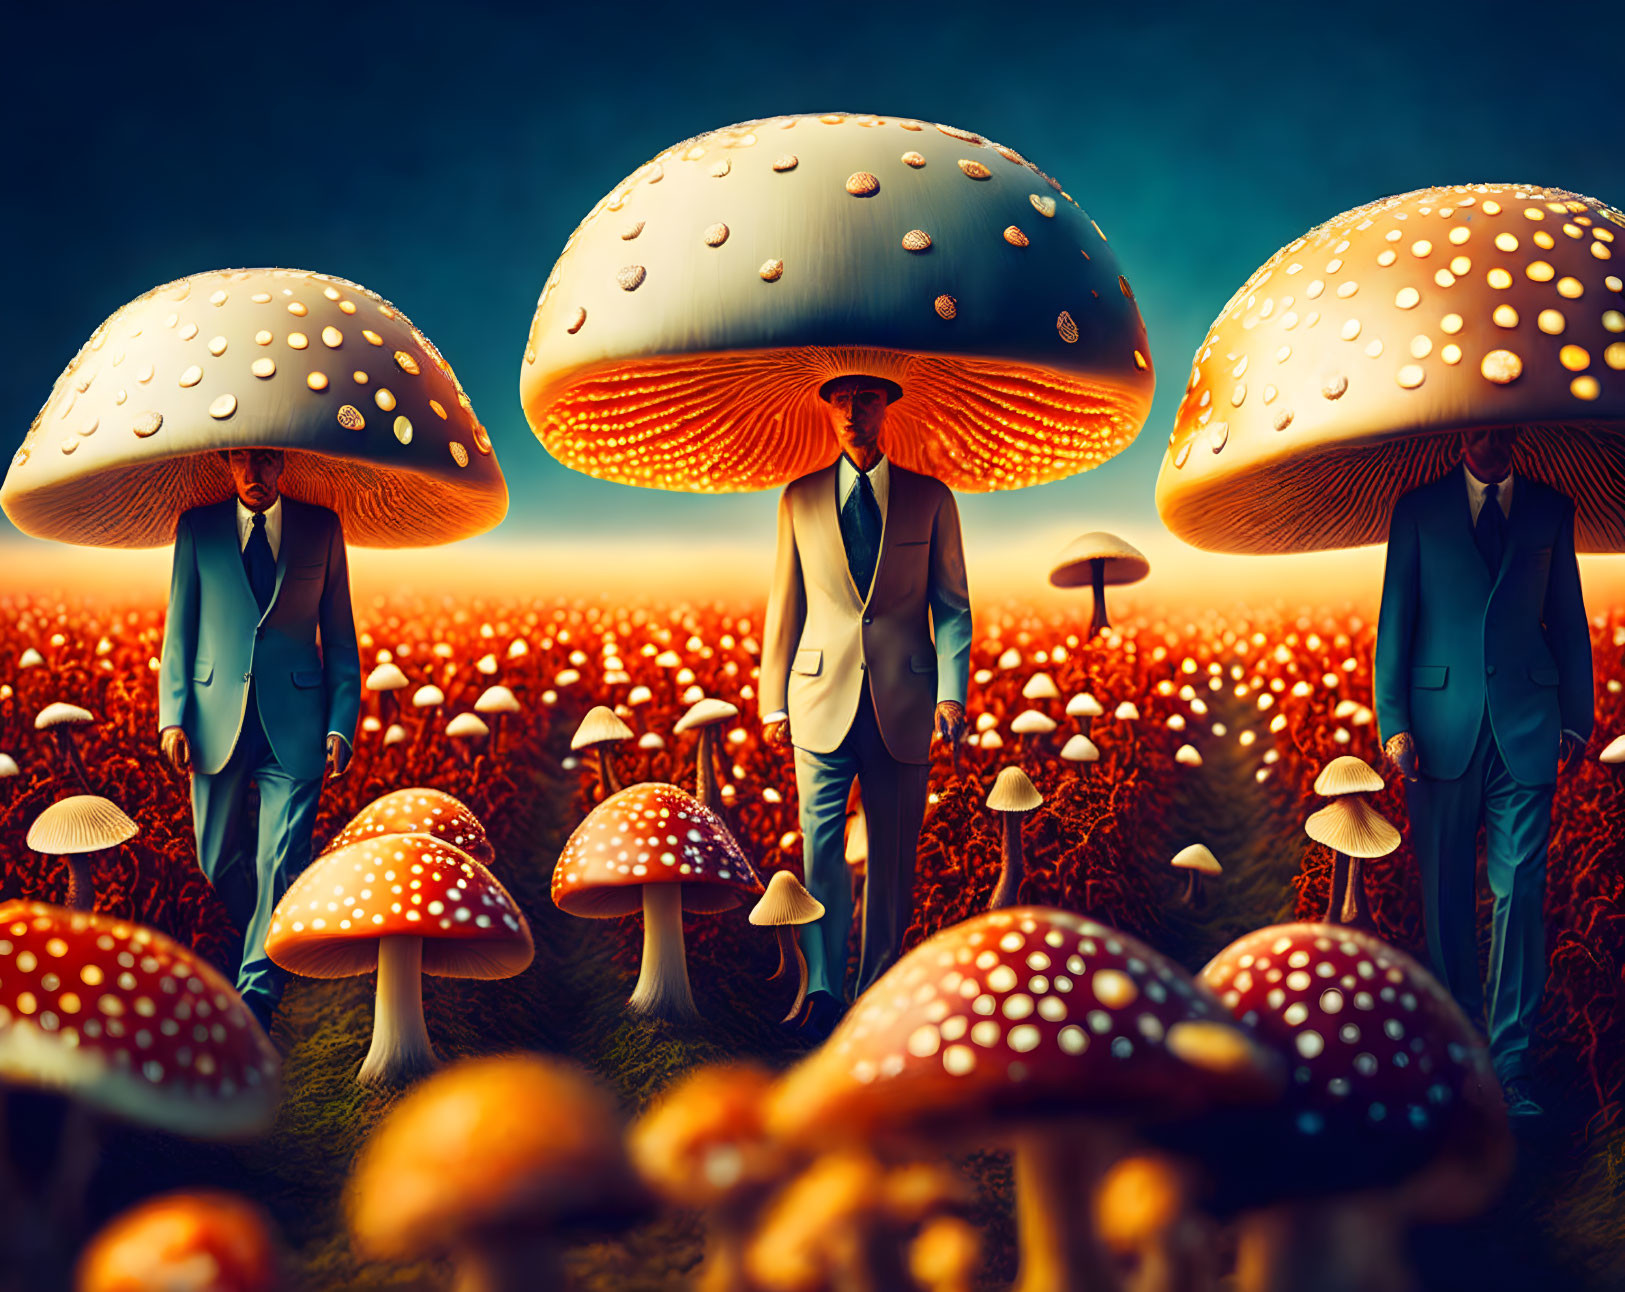 Mushroom heads